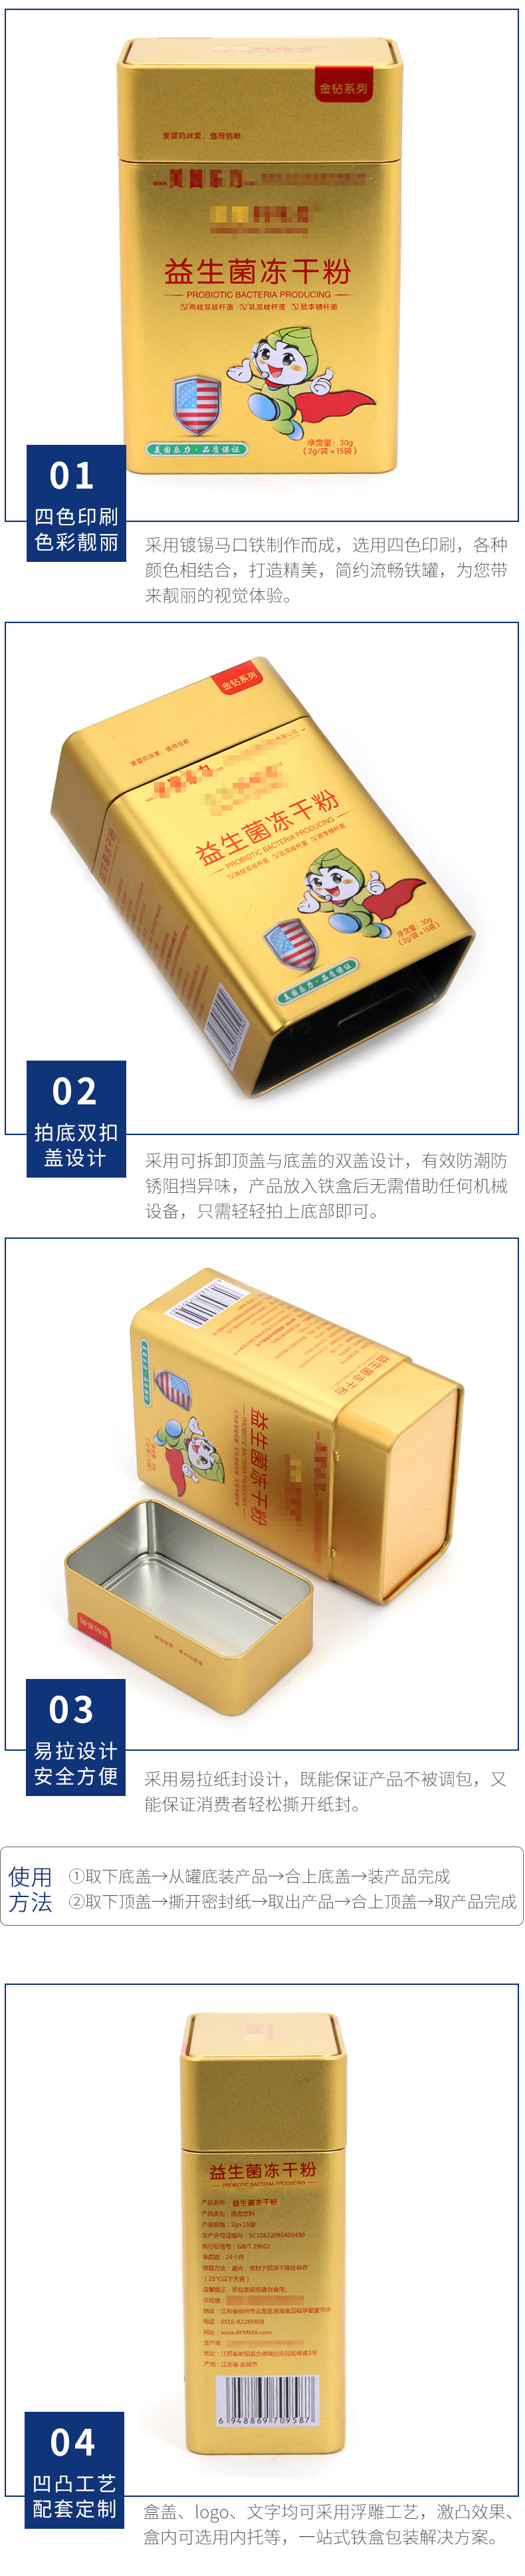 益生菌粉马口铁盒定制 固体饮料铁罐包装盒 密封马口铁盒长方形大示例图14